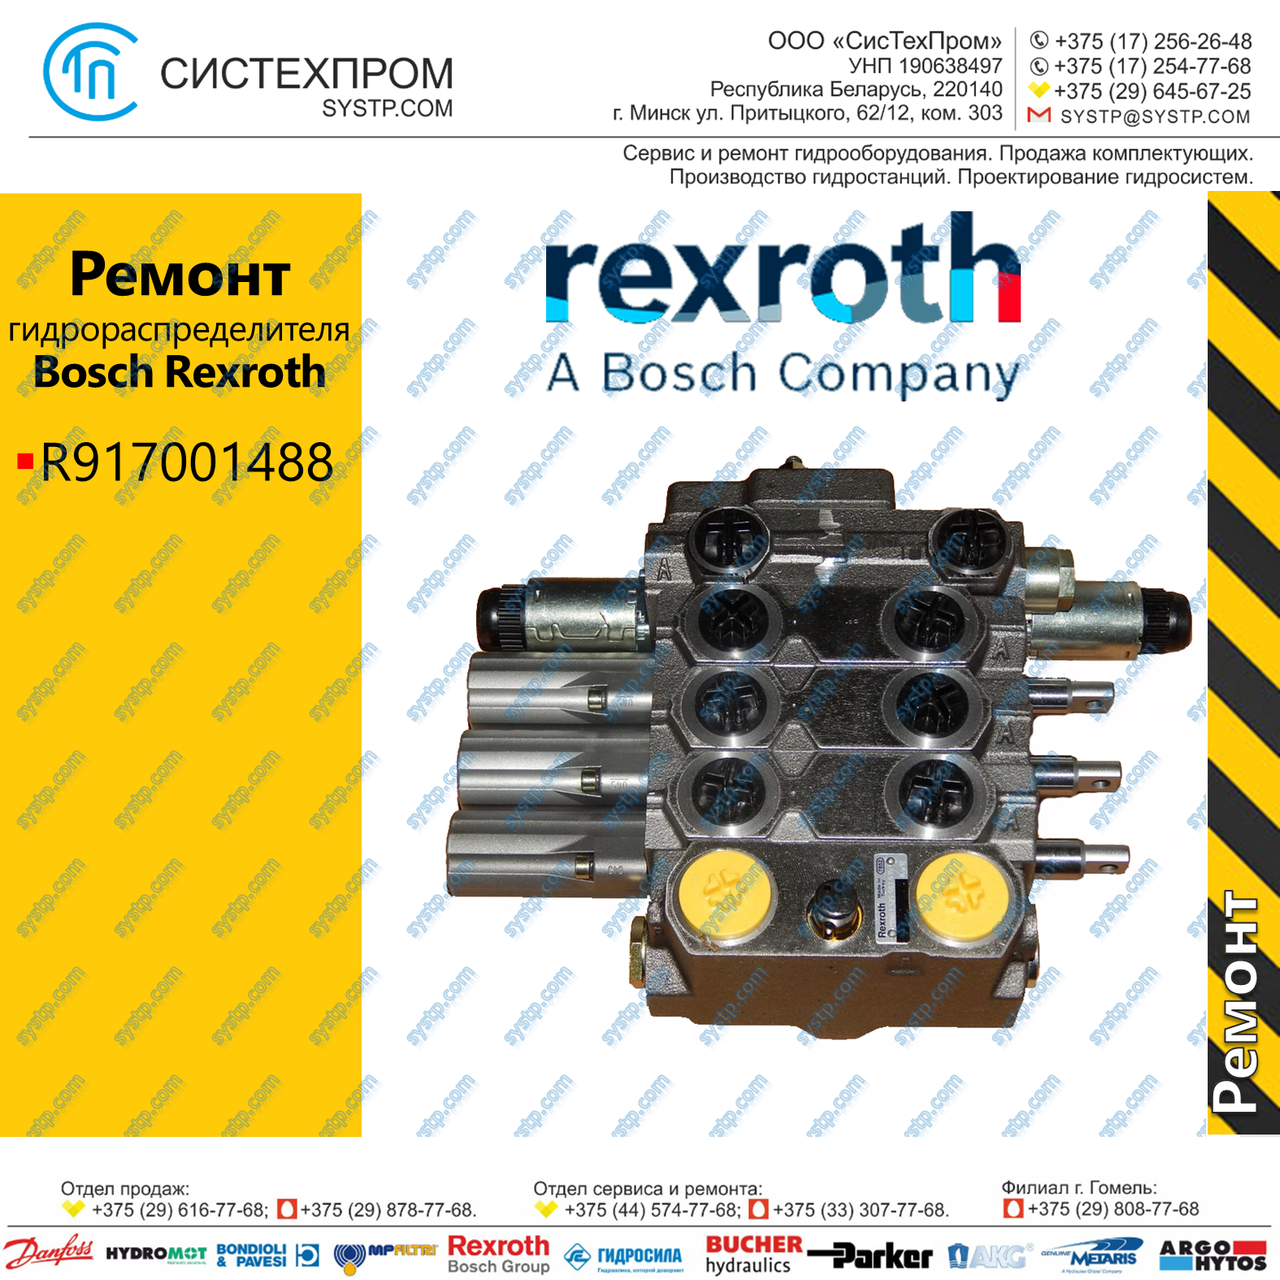 Ремонт гидрораспределителей Bosch Rexroth R917001488